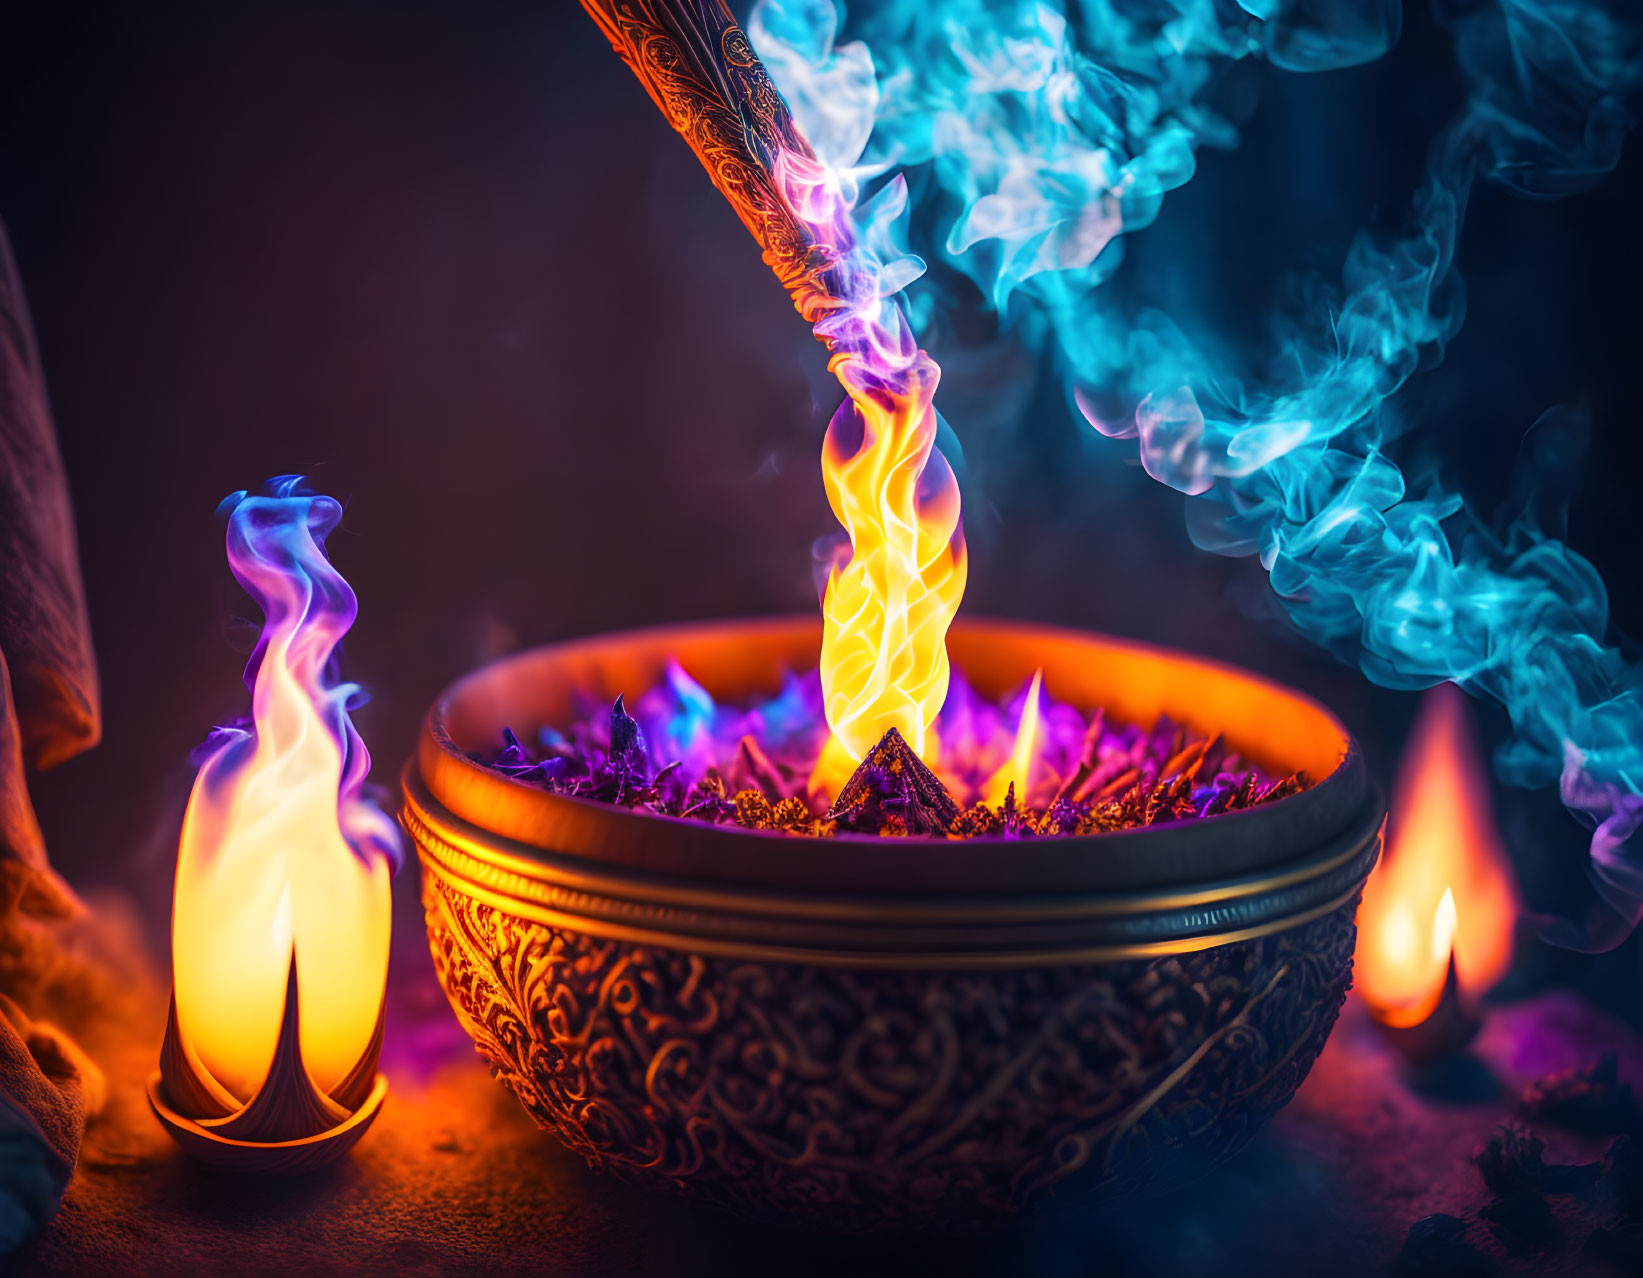 Vibrant flames in ornate bowl on dark backdrop